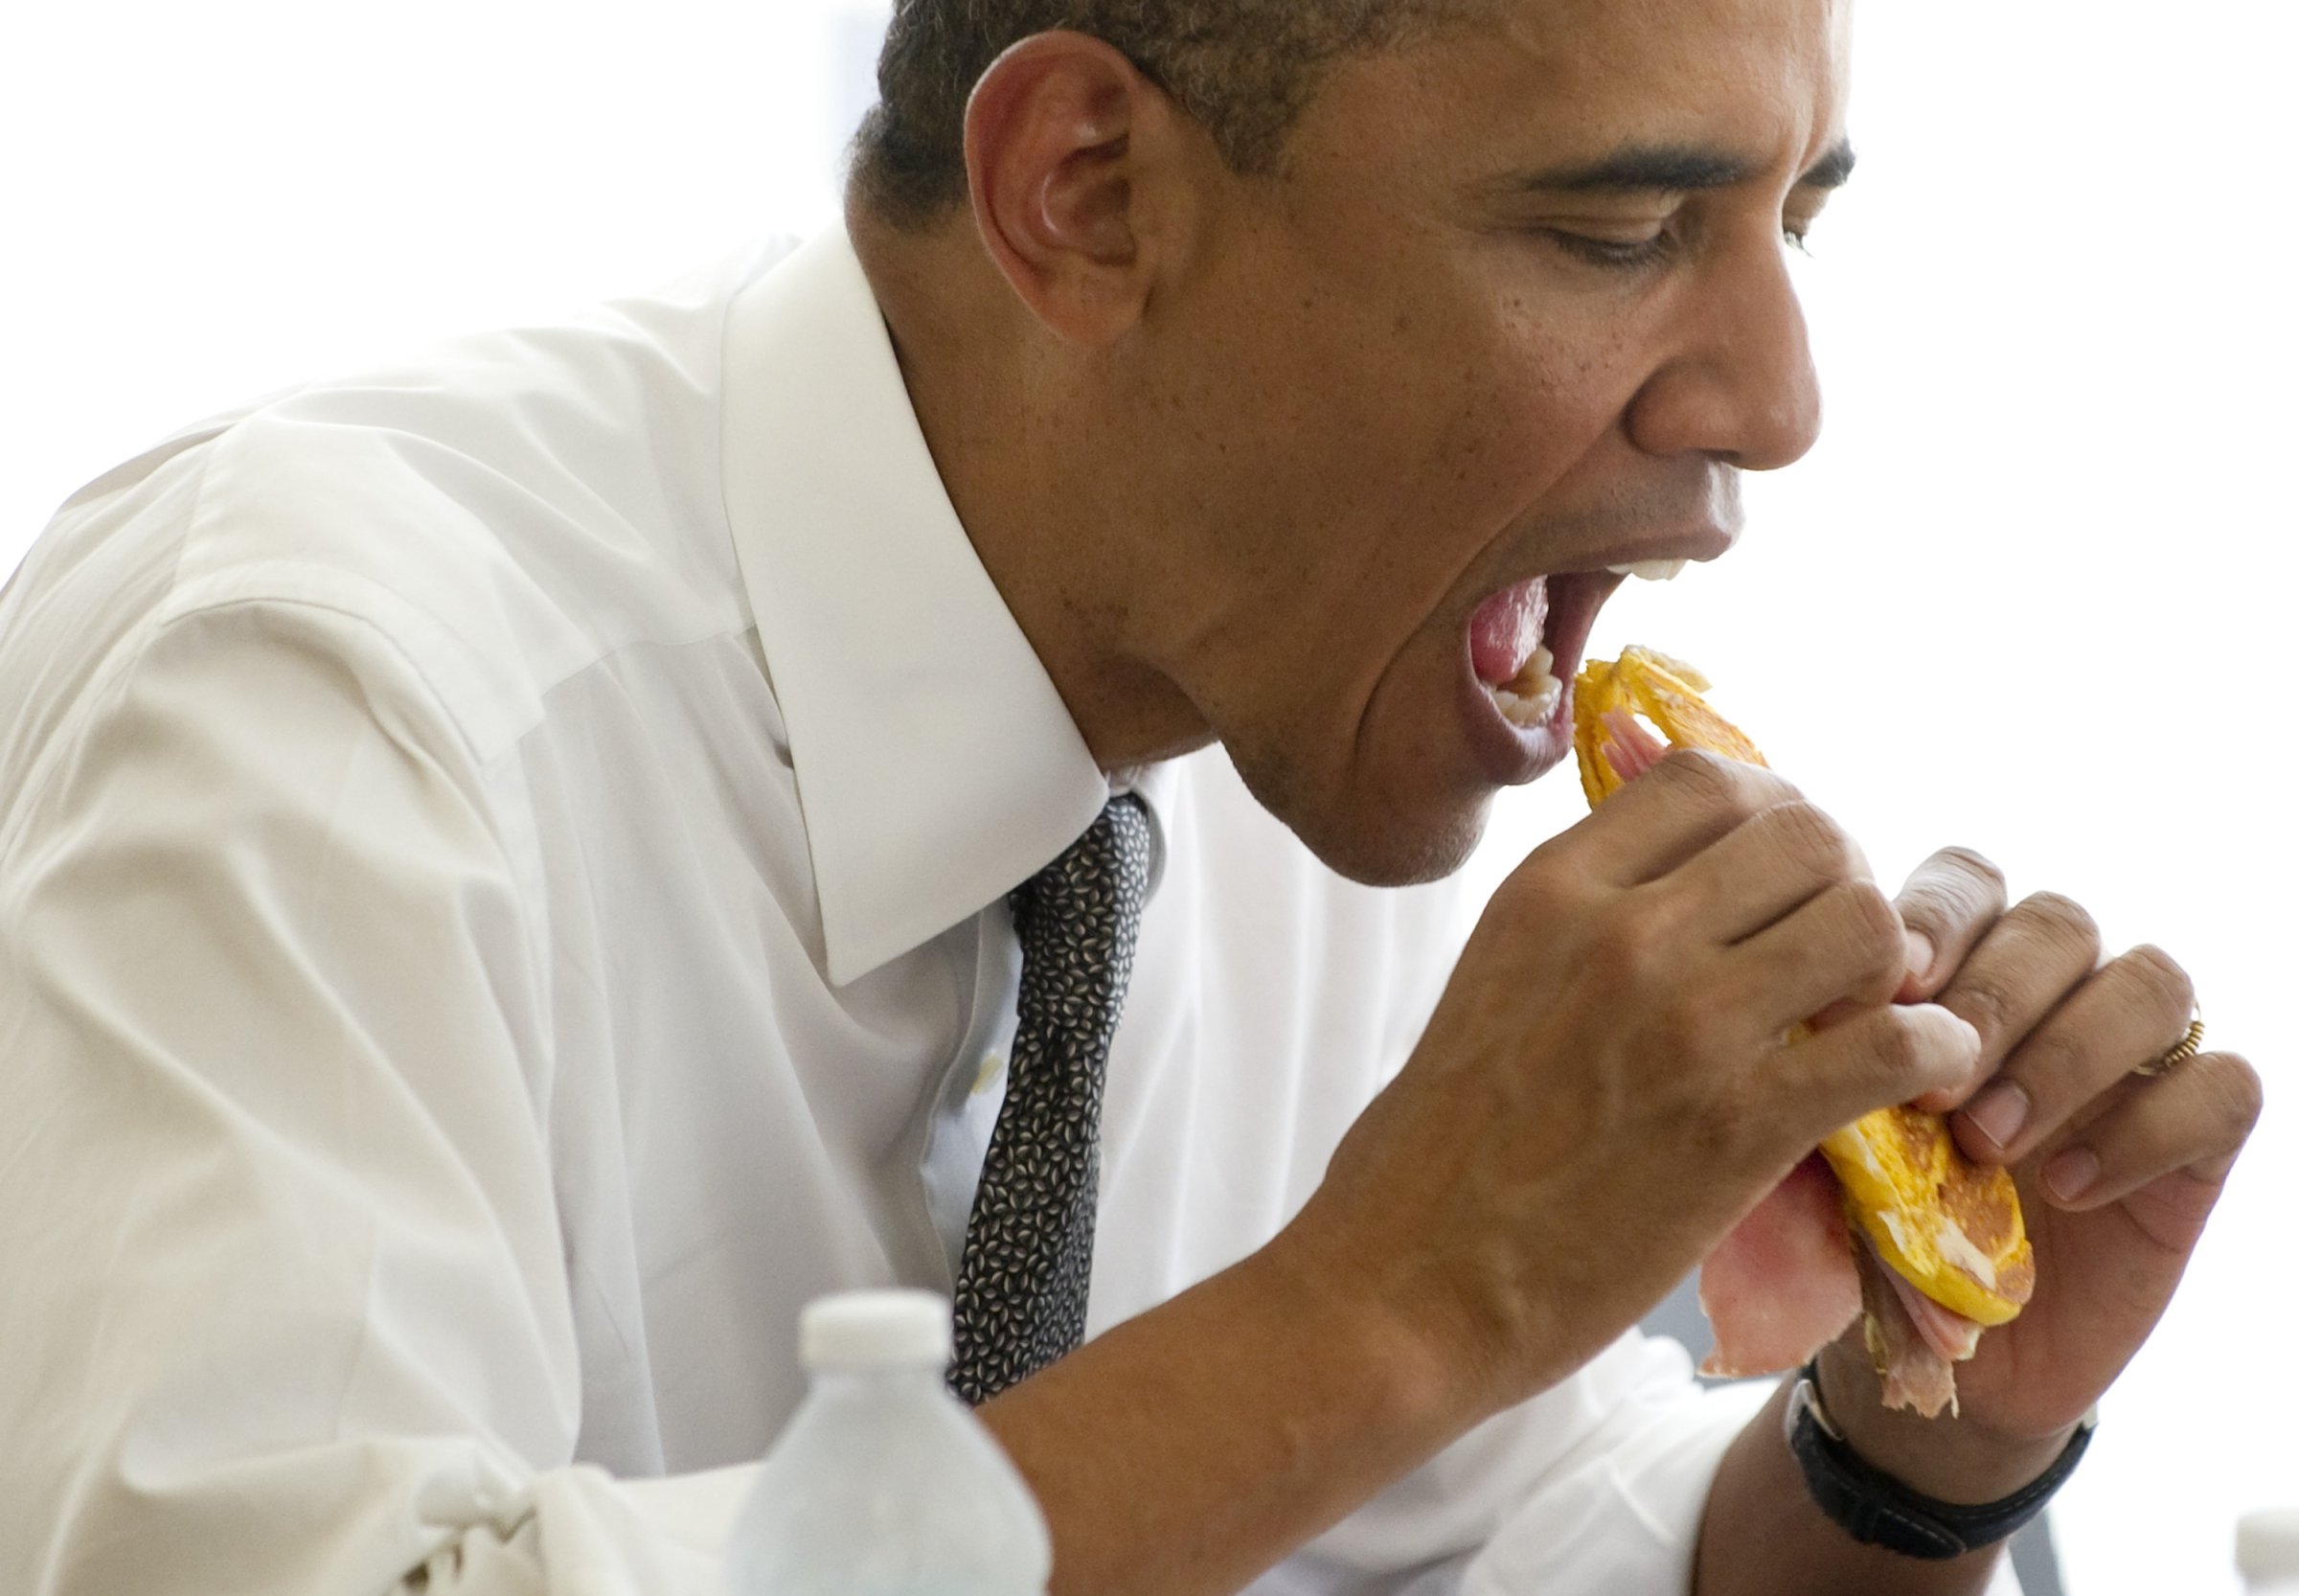 US President Barack Obama eats a "median